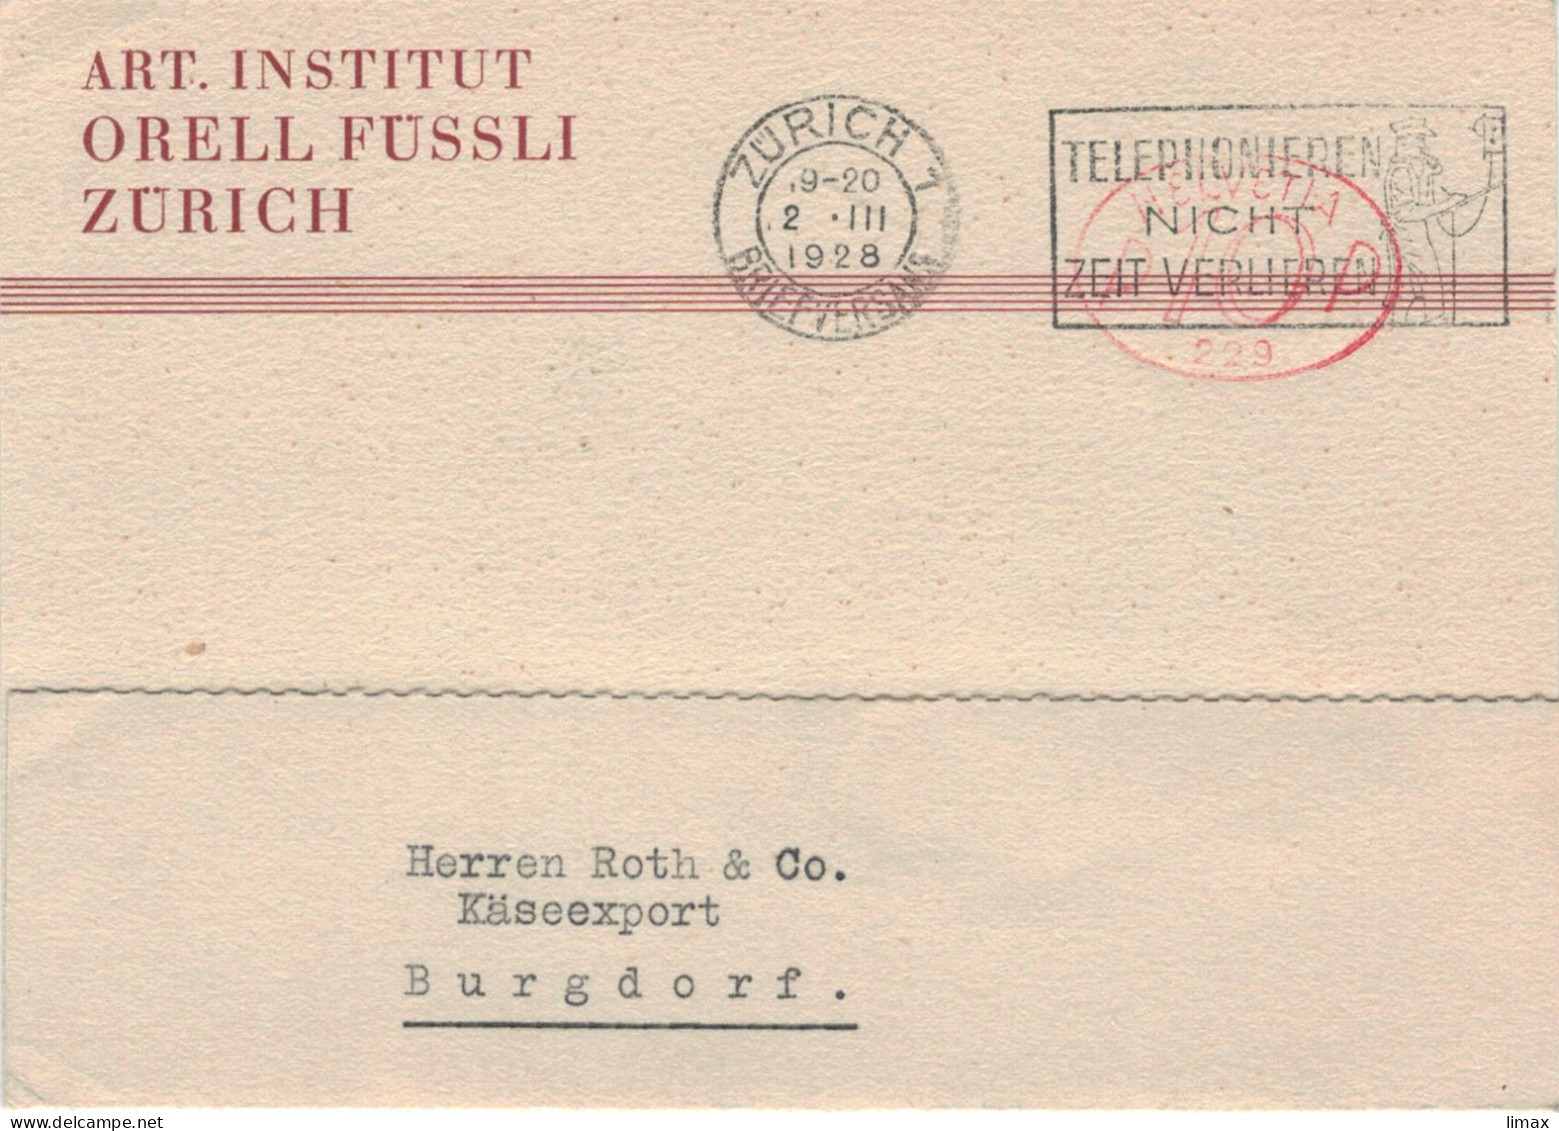 Art. Institut Orell Füssli Zürich Briefversand 1928 Hasler-Stempel No 229 - Telefonieren Nicht Zeit Verlieren > Burgdorf - Frankeermachinen